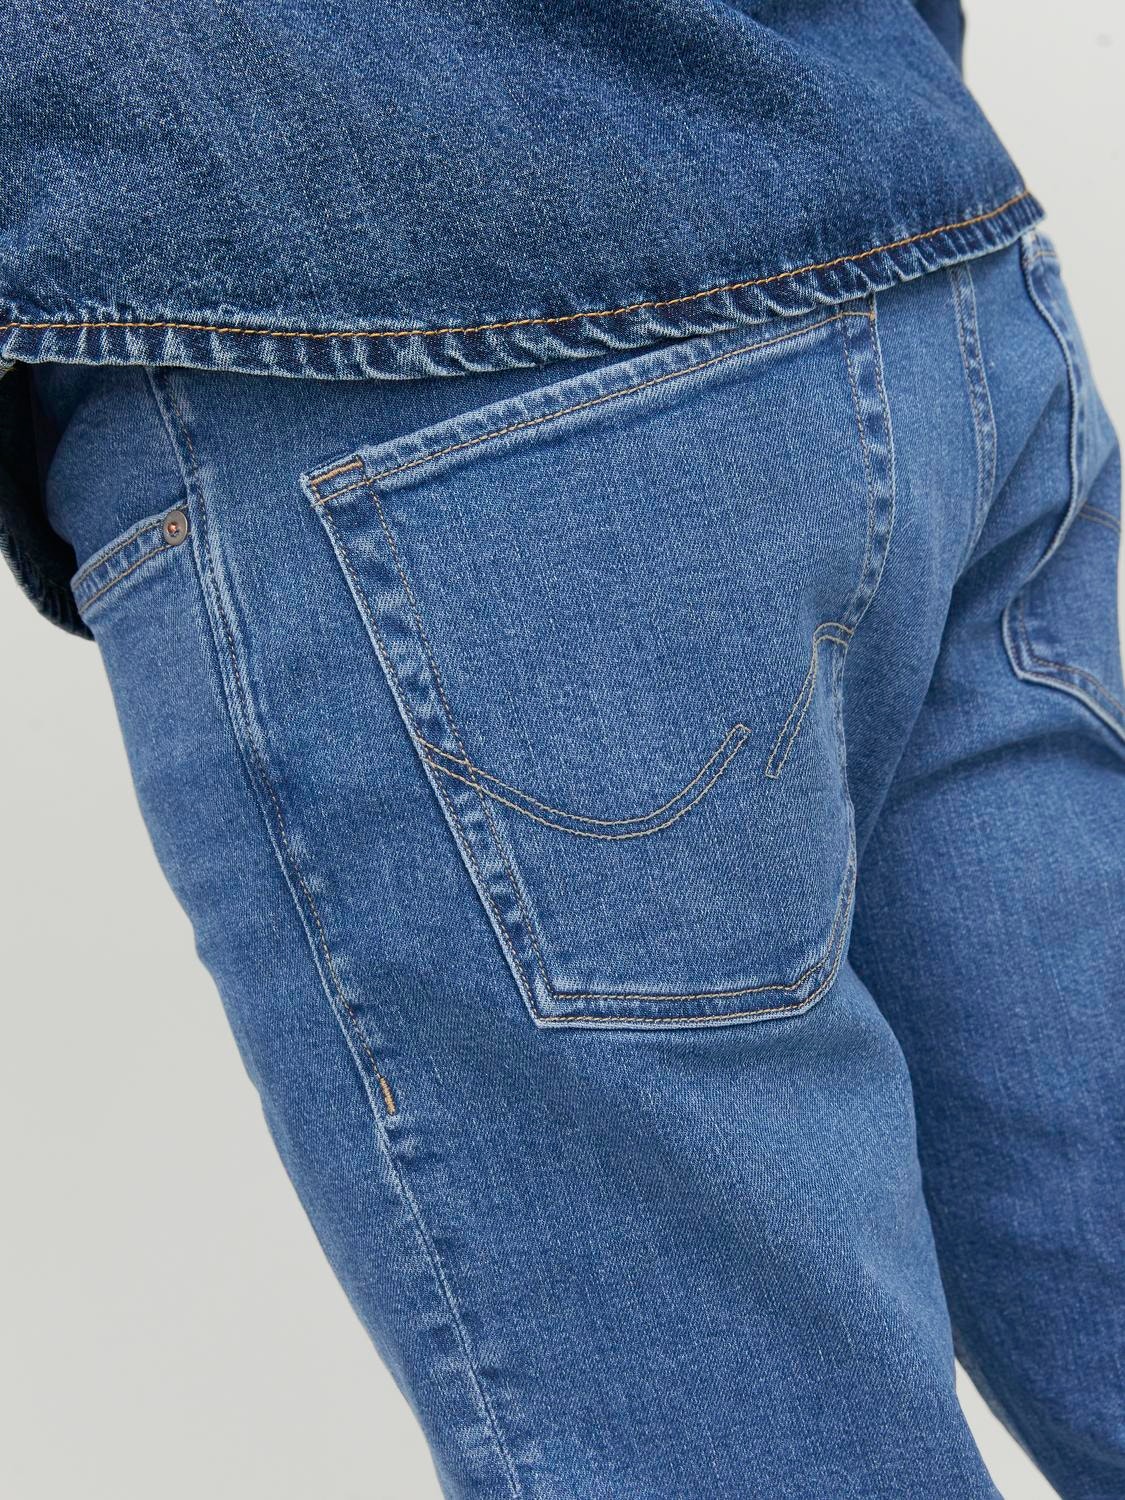 Jack & Jones JJIMIKE JJORIIGINAL AM 385 Tapered fit jeans -Blue Denim - 12242320